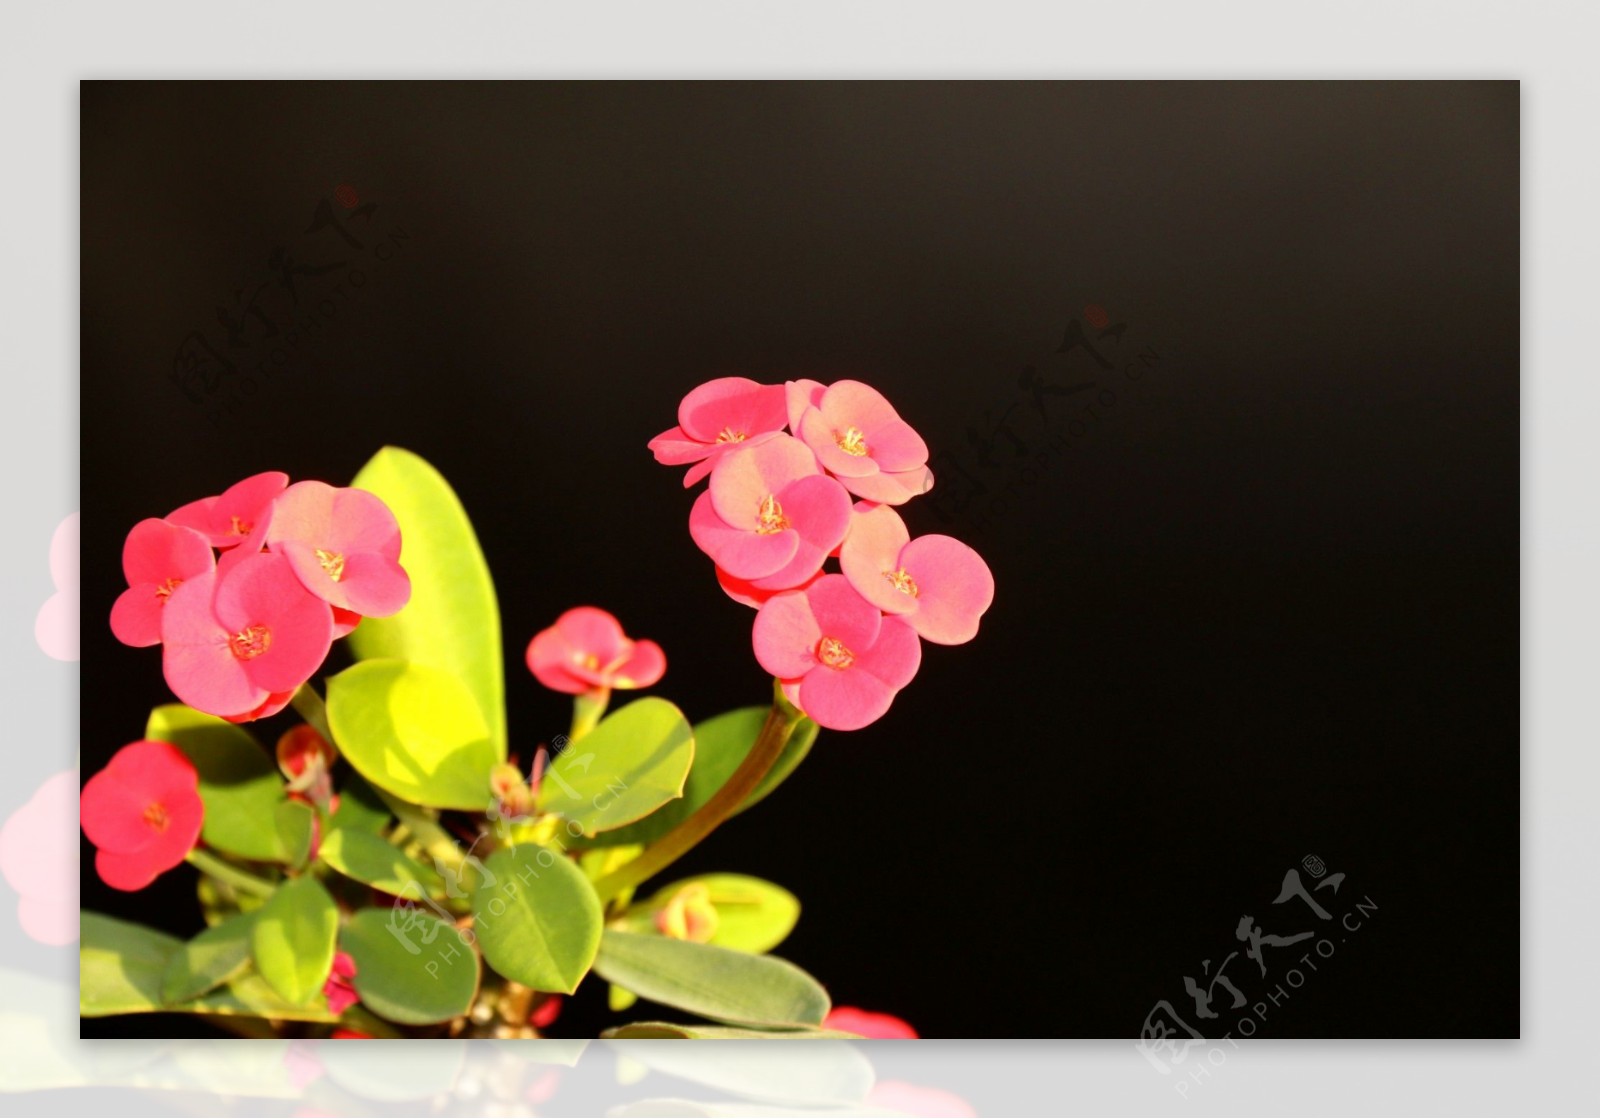 鲜艳美丽的小红花图片